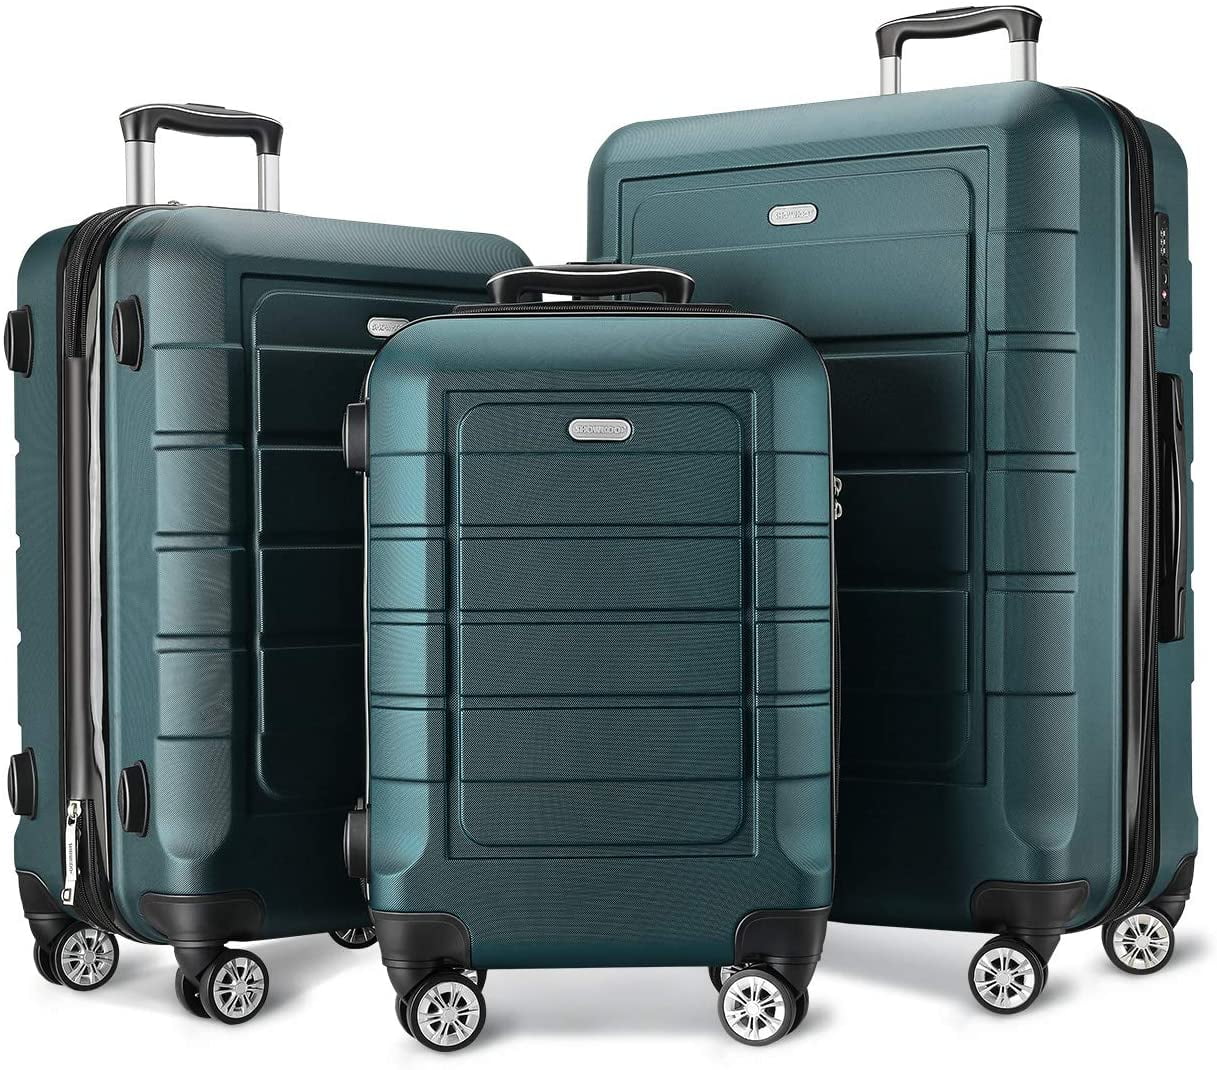 SHOWKOO Luggage Sets Expandable PC+ABS Durable Suitcase Double Wheels TSA Lock Green 3pcs